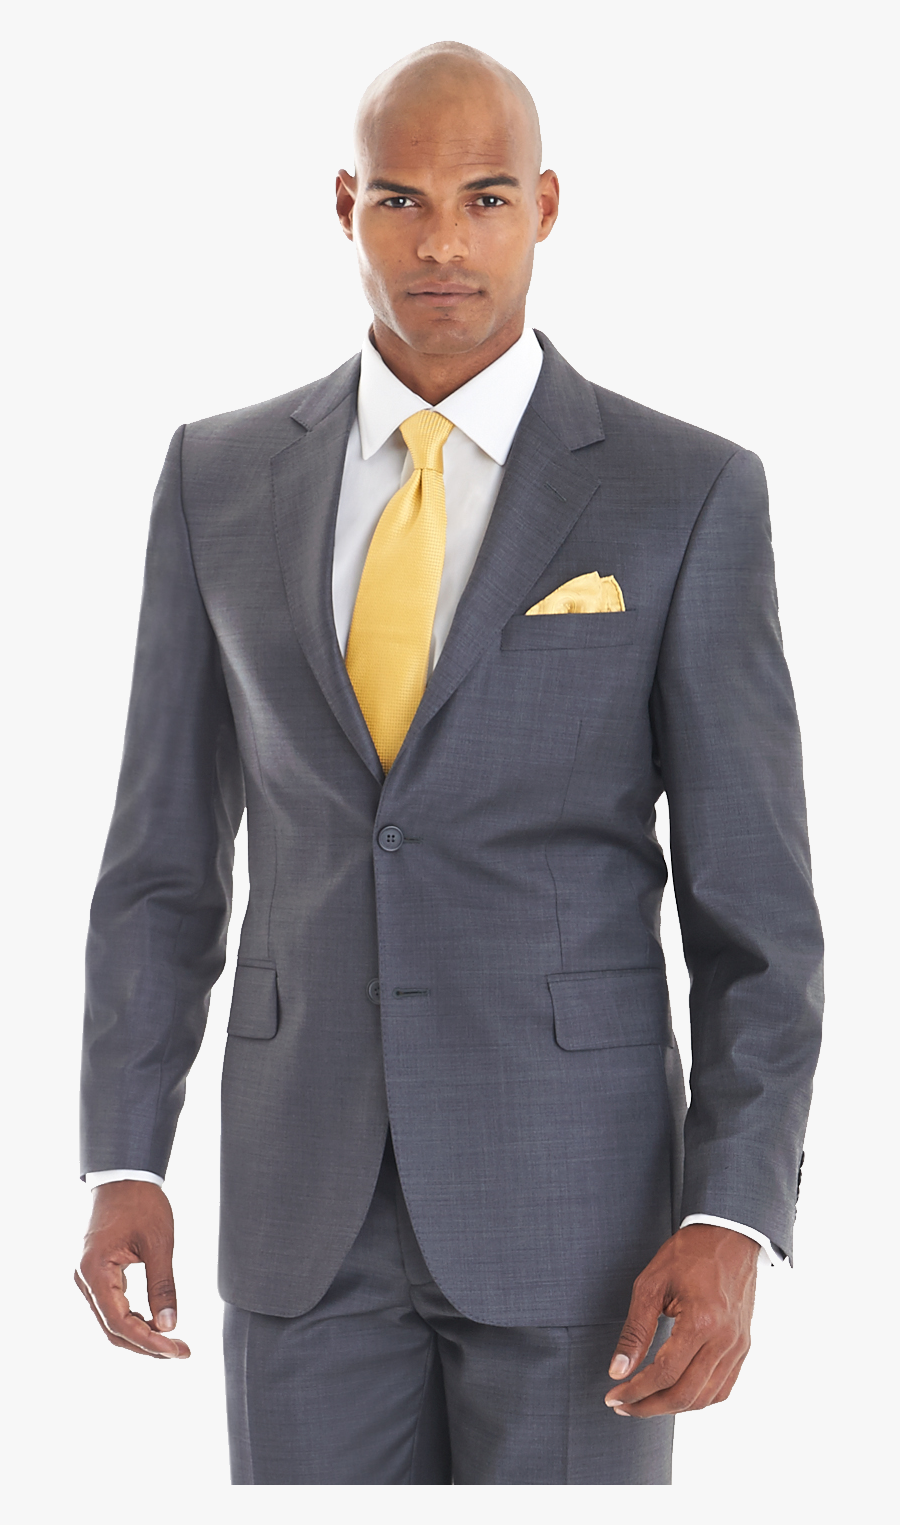 Suit Png Image - Men On Suit Png, Transparent Clipart